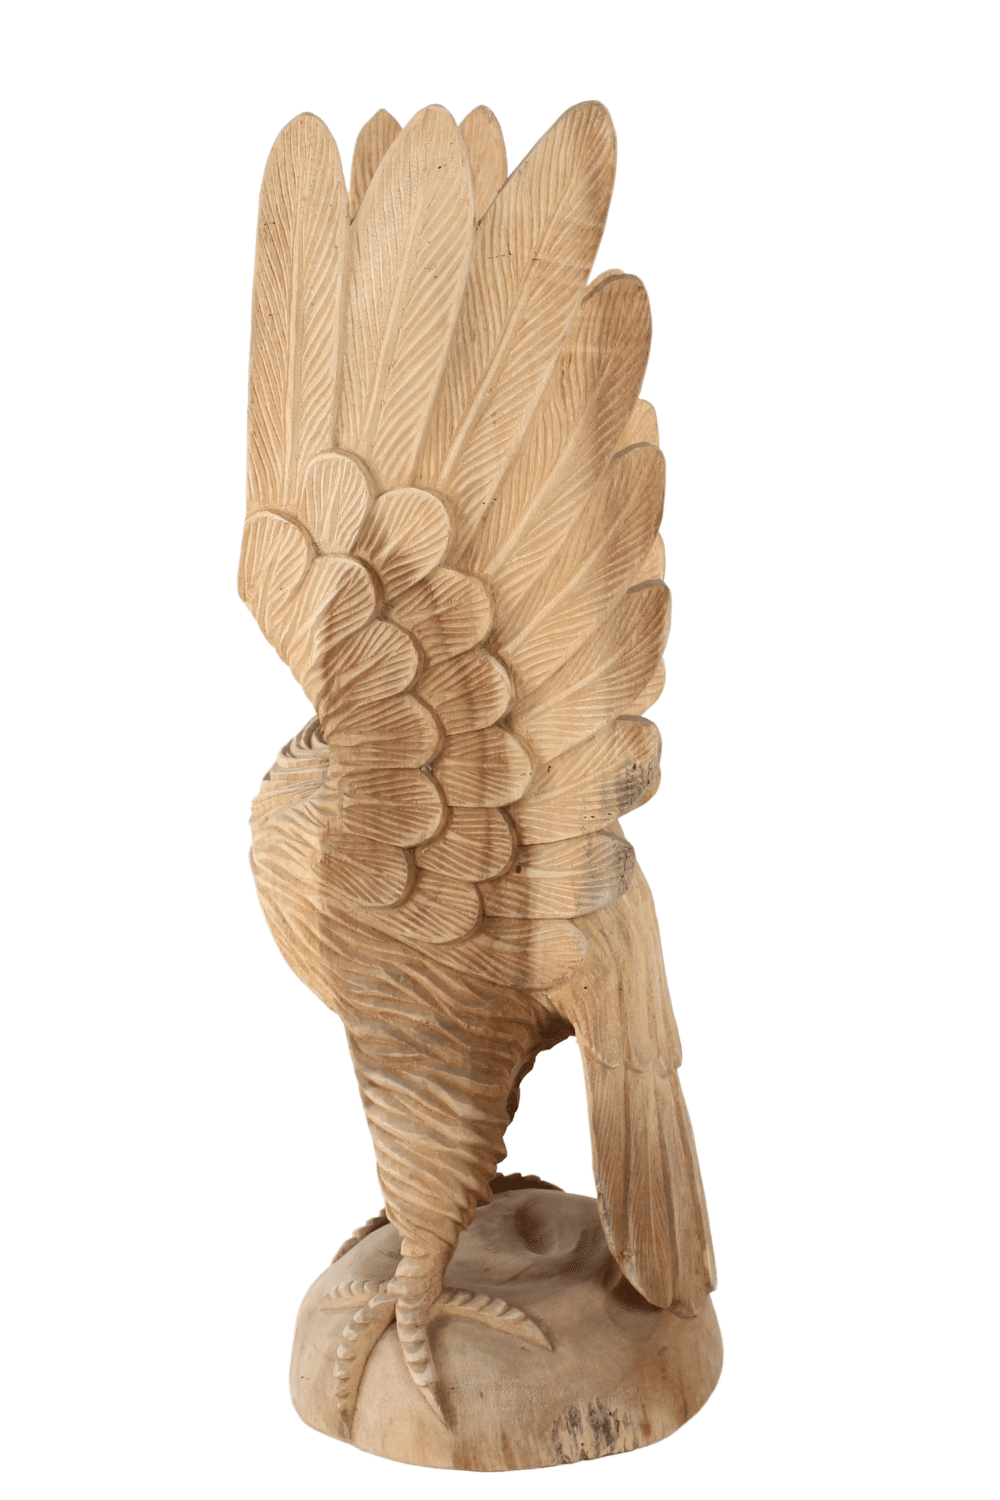 houten beeld van adelaar